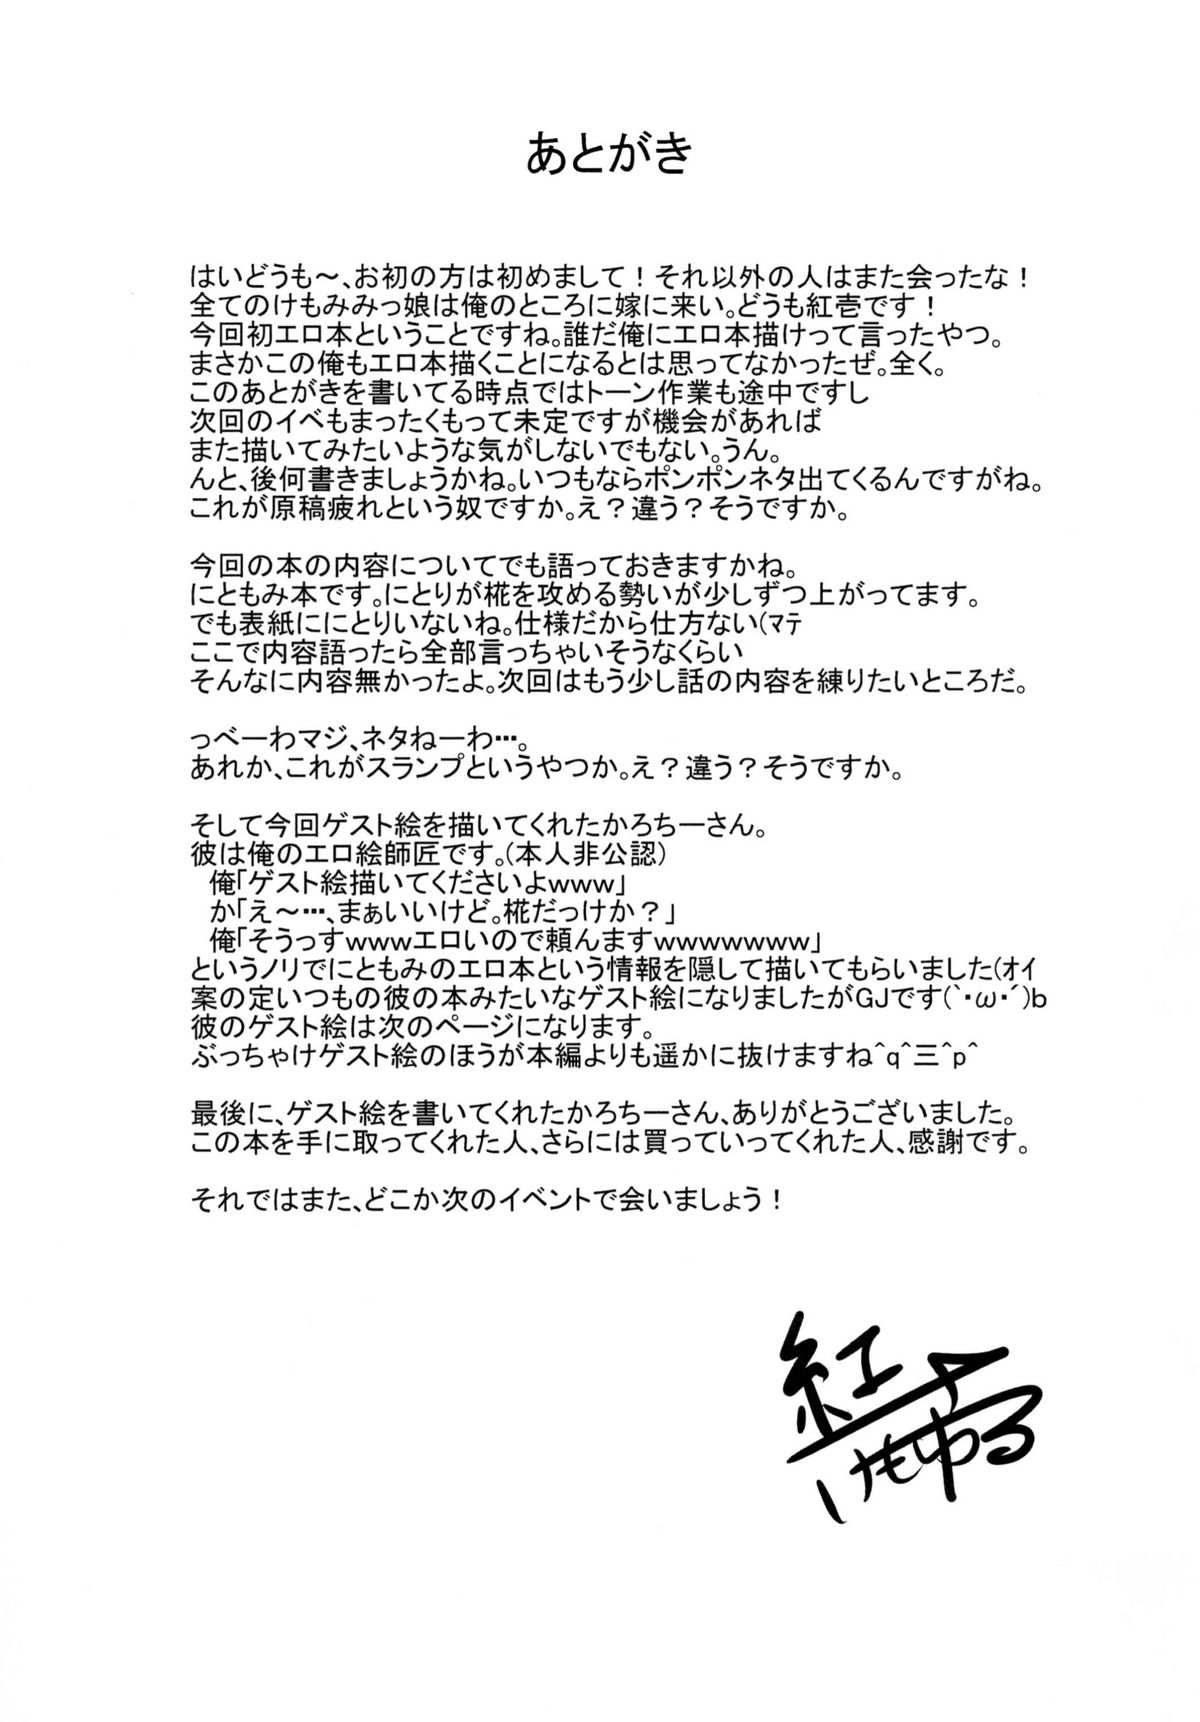 [Kemoyuru] Nitorokku (Touhou project) page 23 full